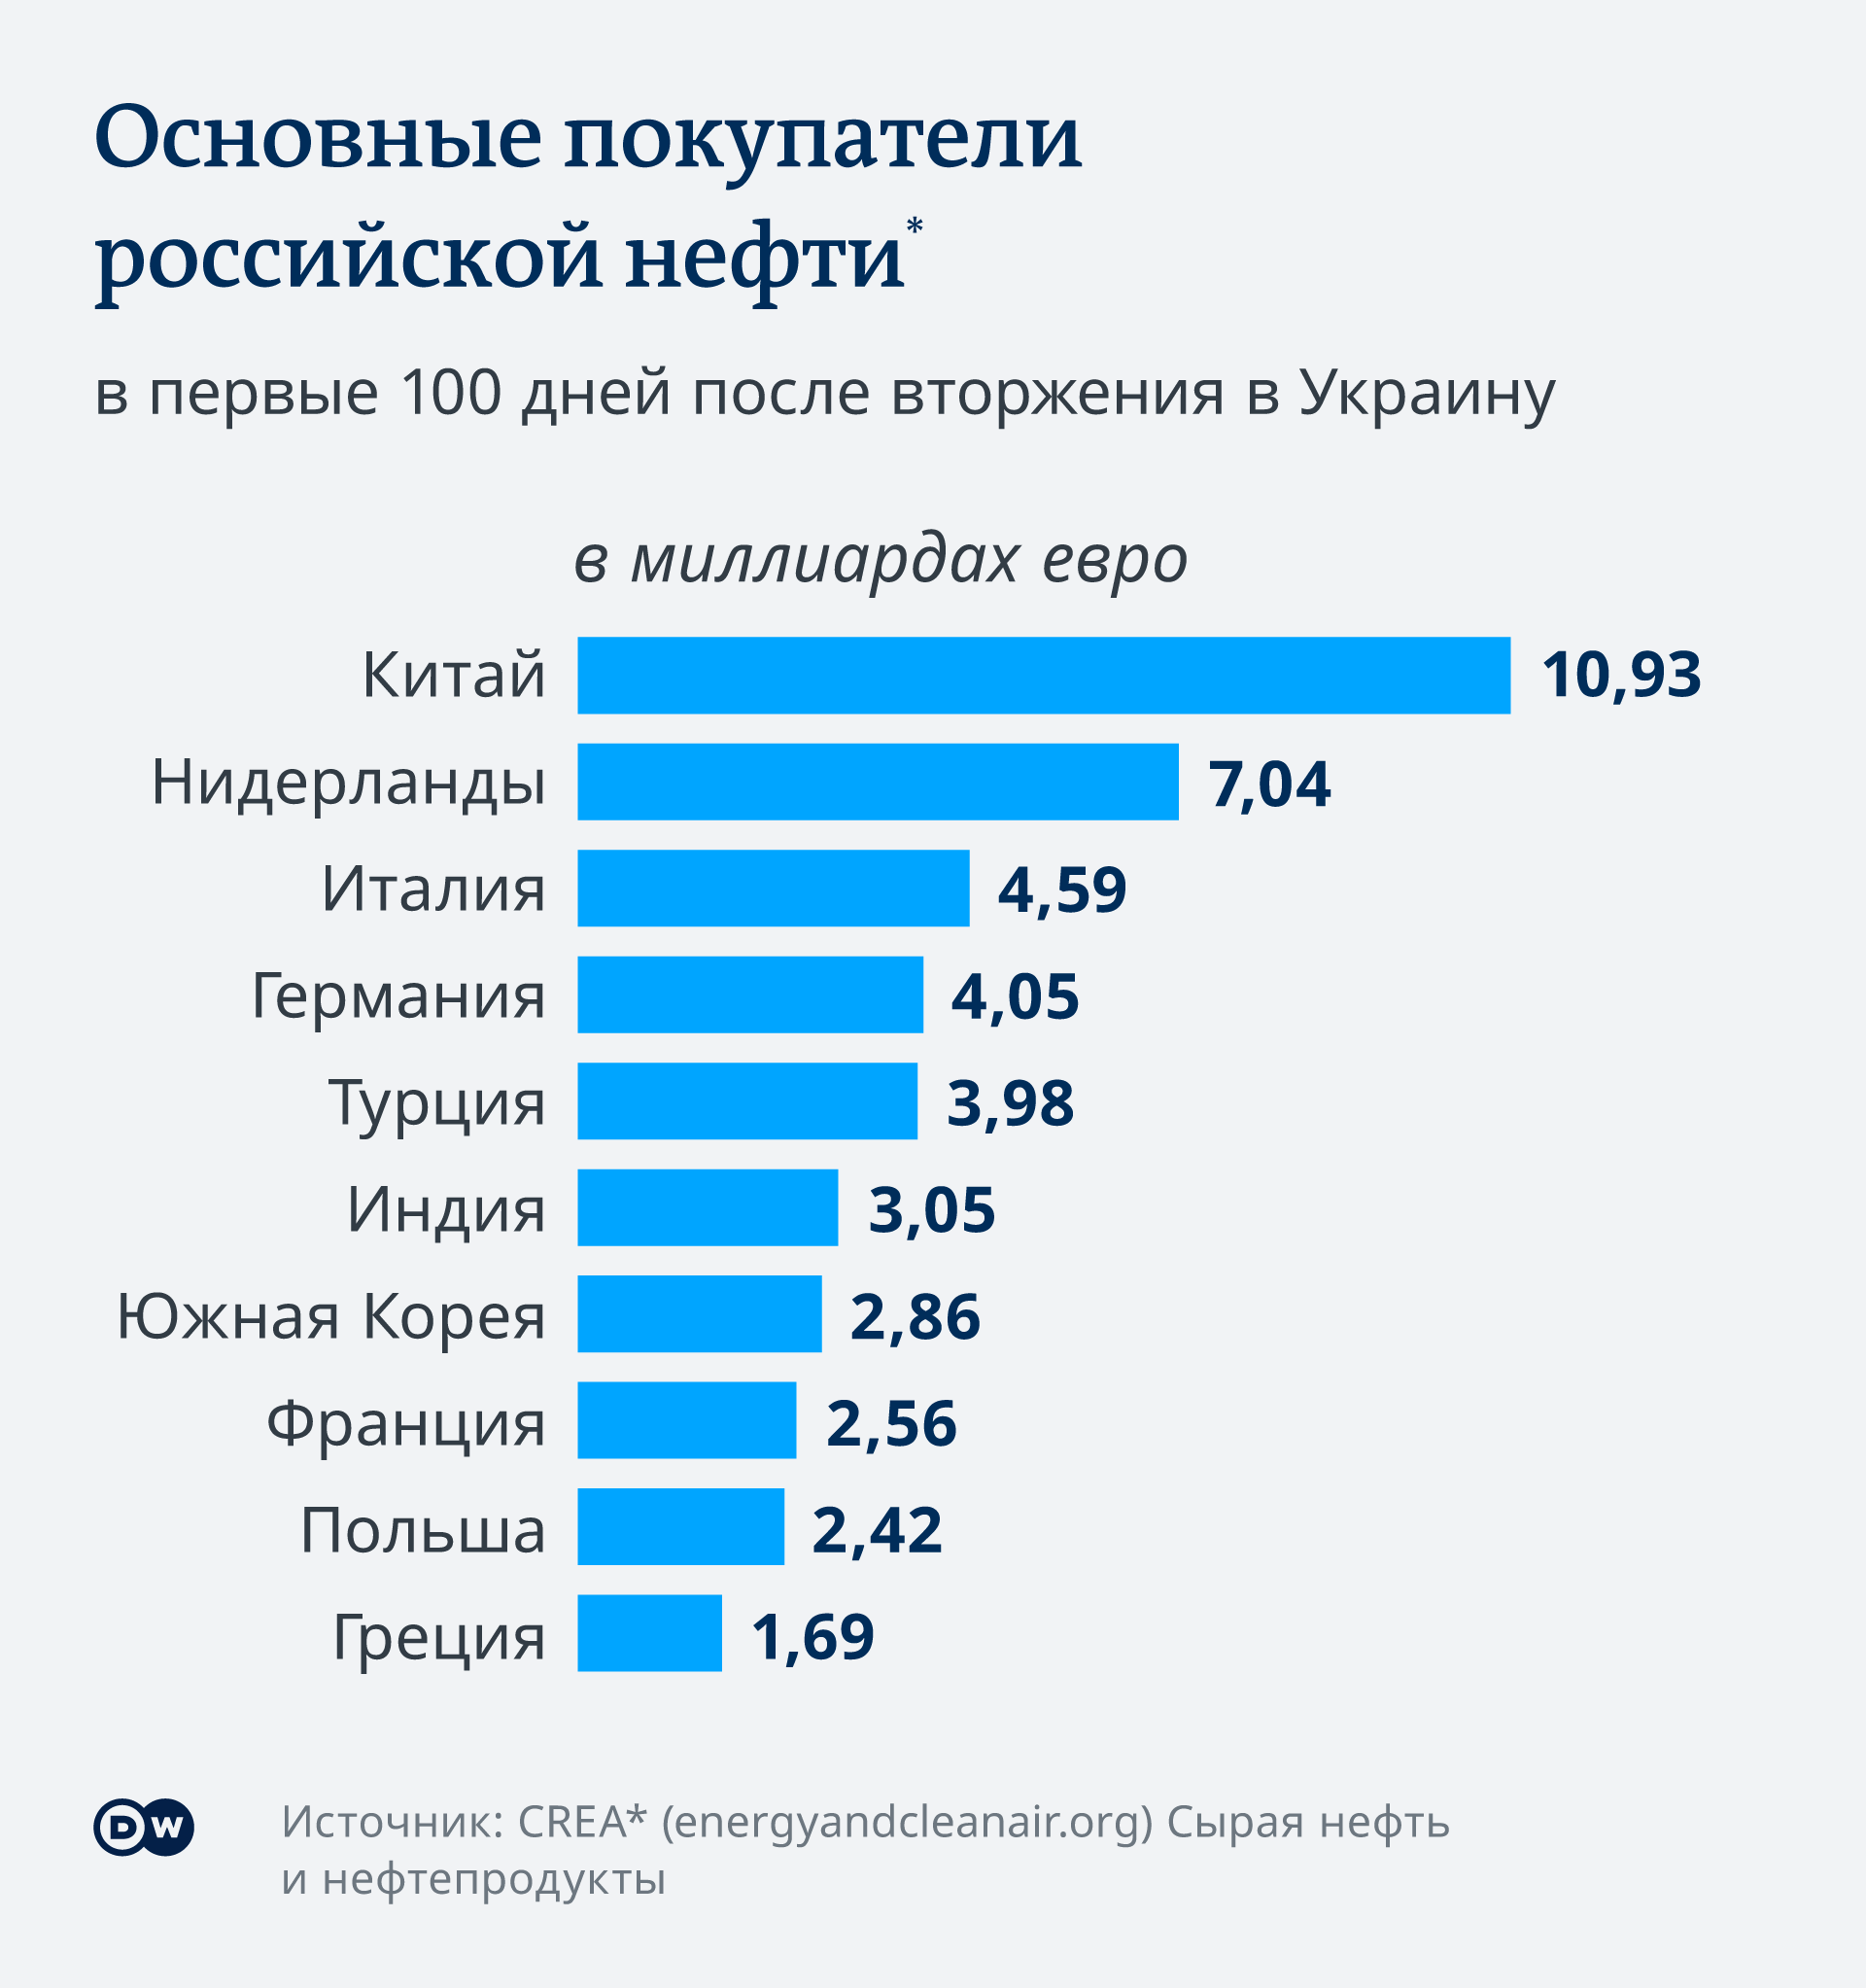 инфографика DW об основных покупателях нефти из РФ 